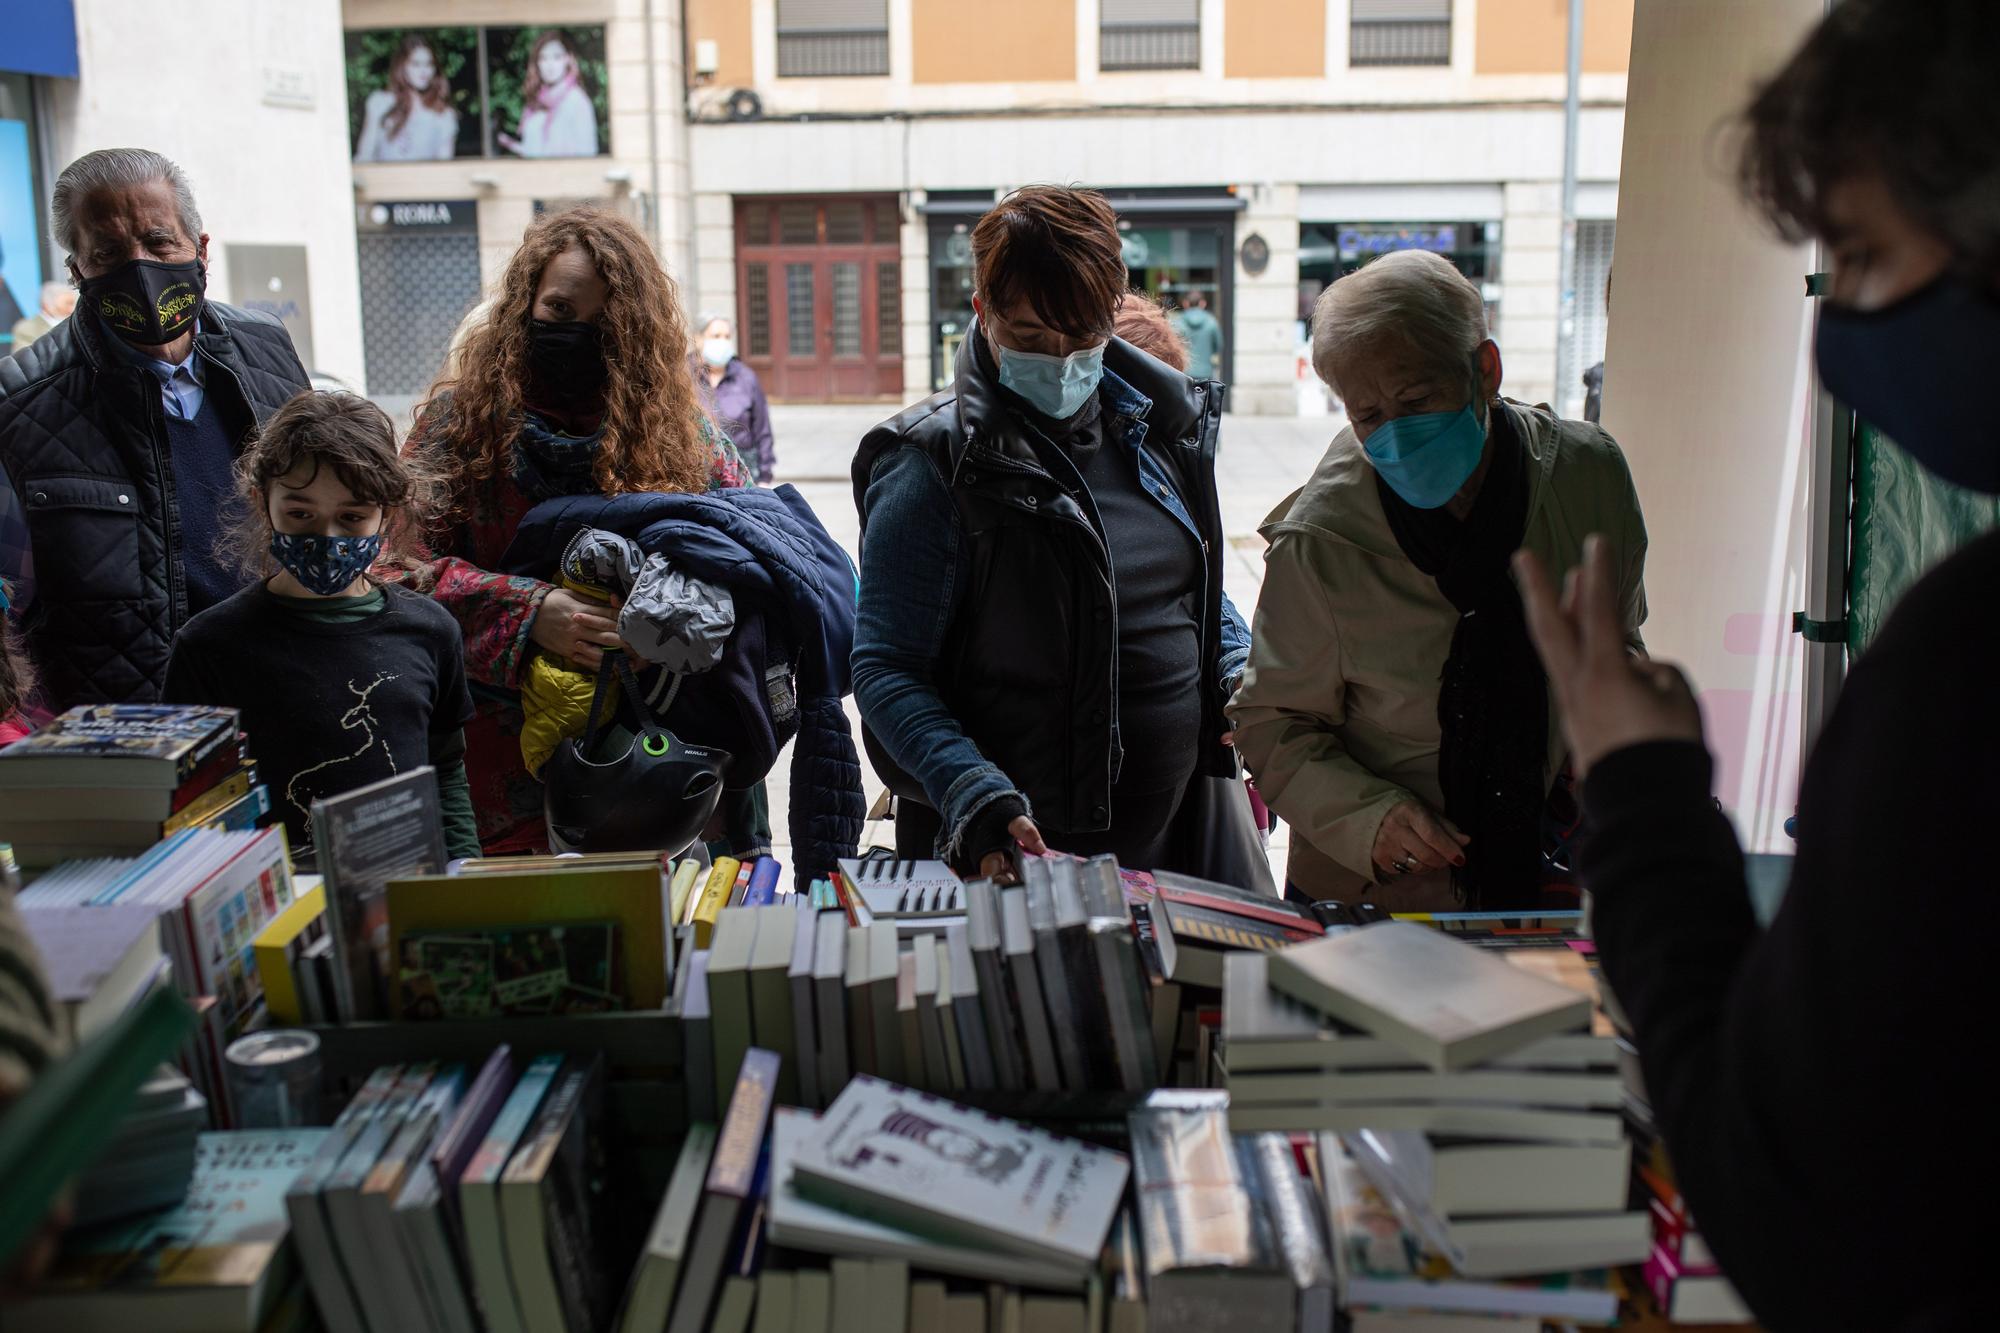 GALERÍA | La Feria del Libro de Zamora, en imágenes